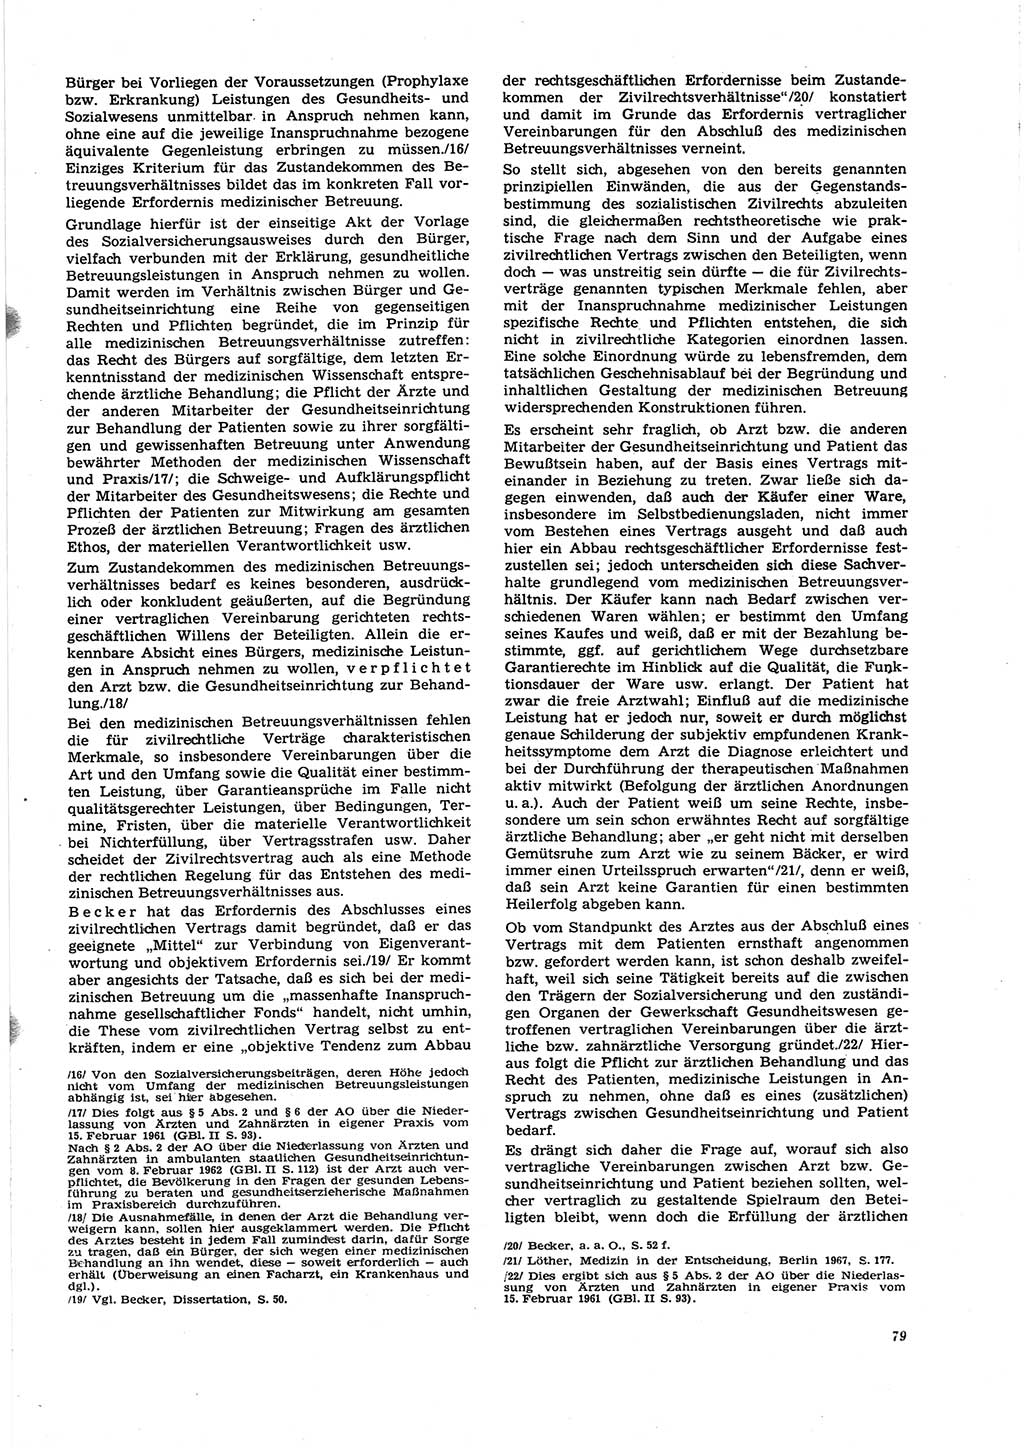 Neue Justiz (NJ), Zeitschrift für Recht und Rechtswissenschaft [Deutsche Demokratische Republik (DDR)], 27. Jahrgang 1973, Seite 79 (NJ DDR 1973, S. 79)